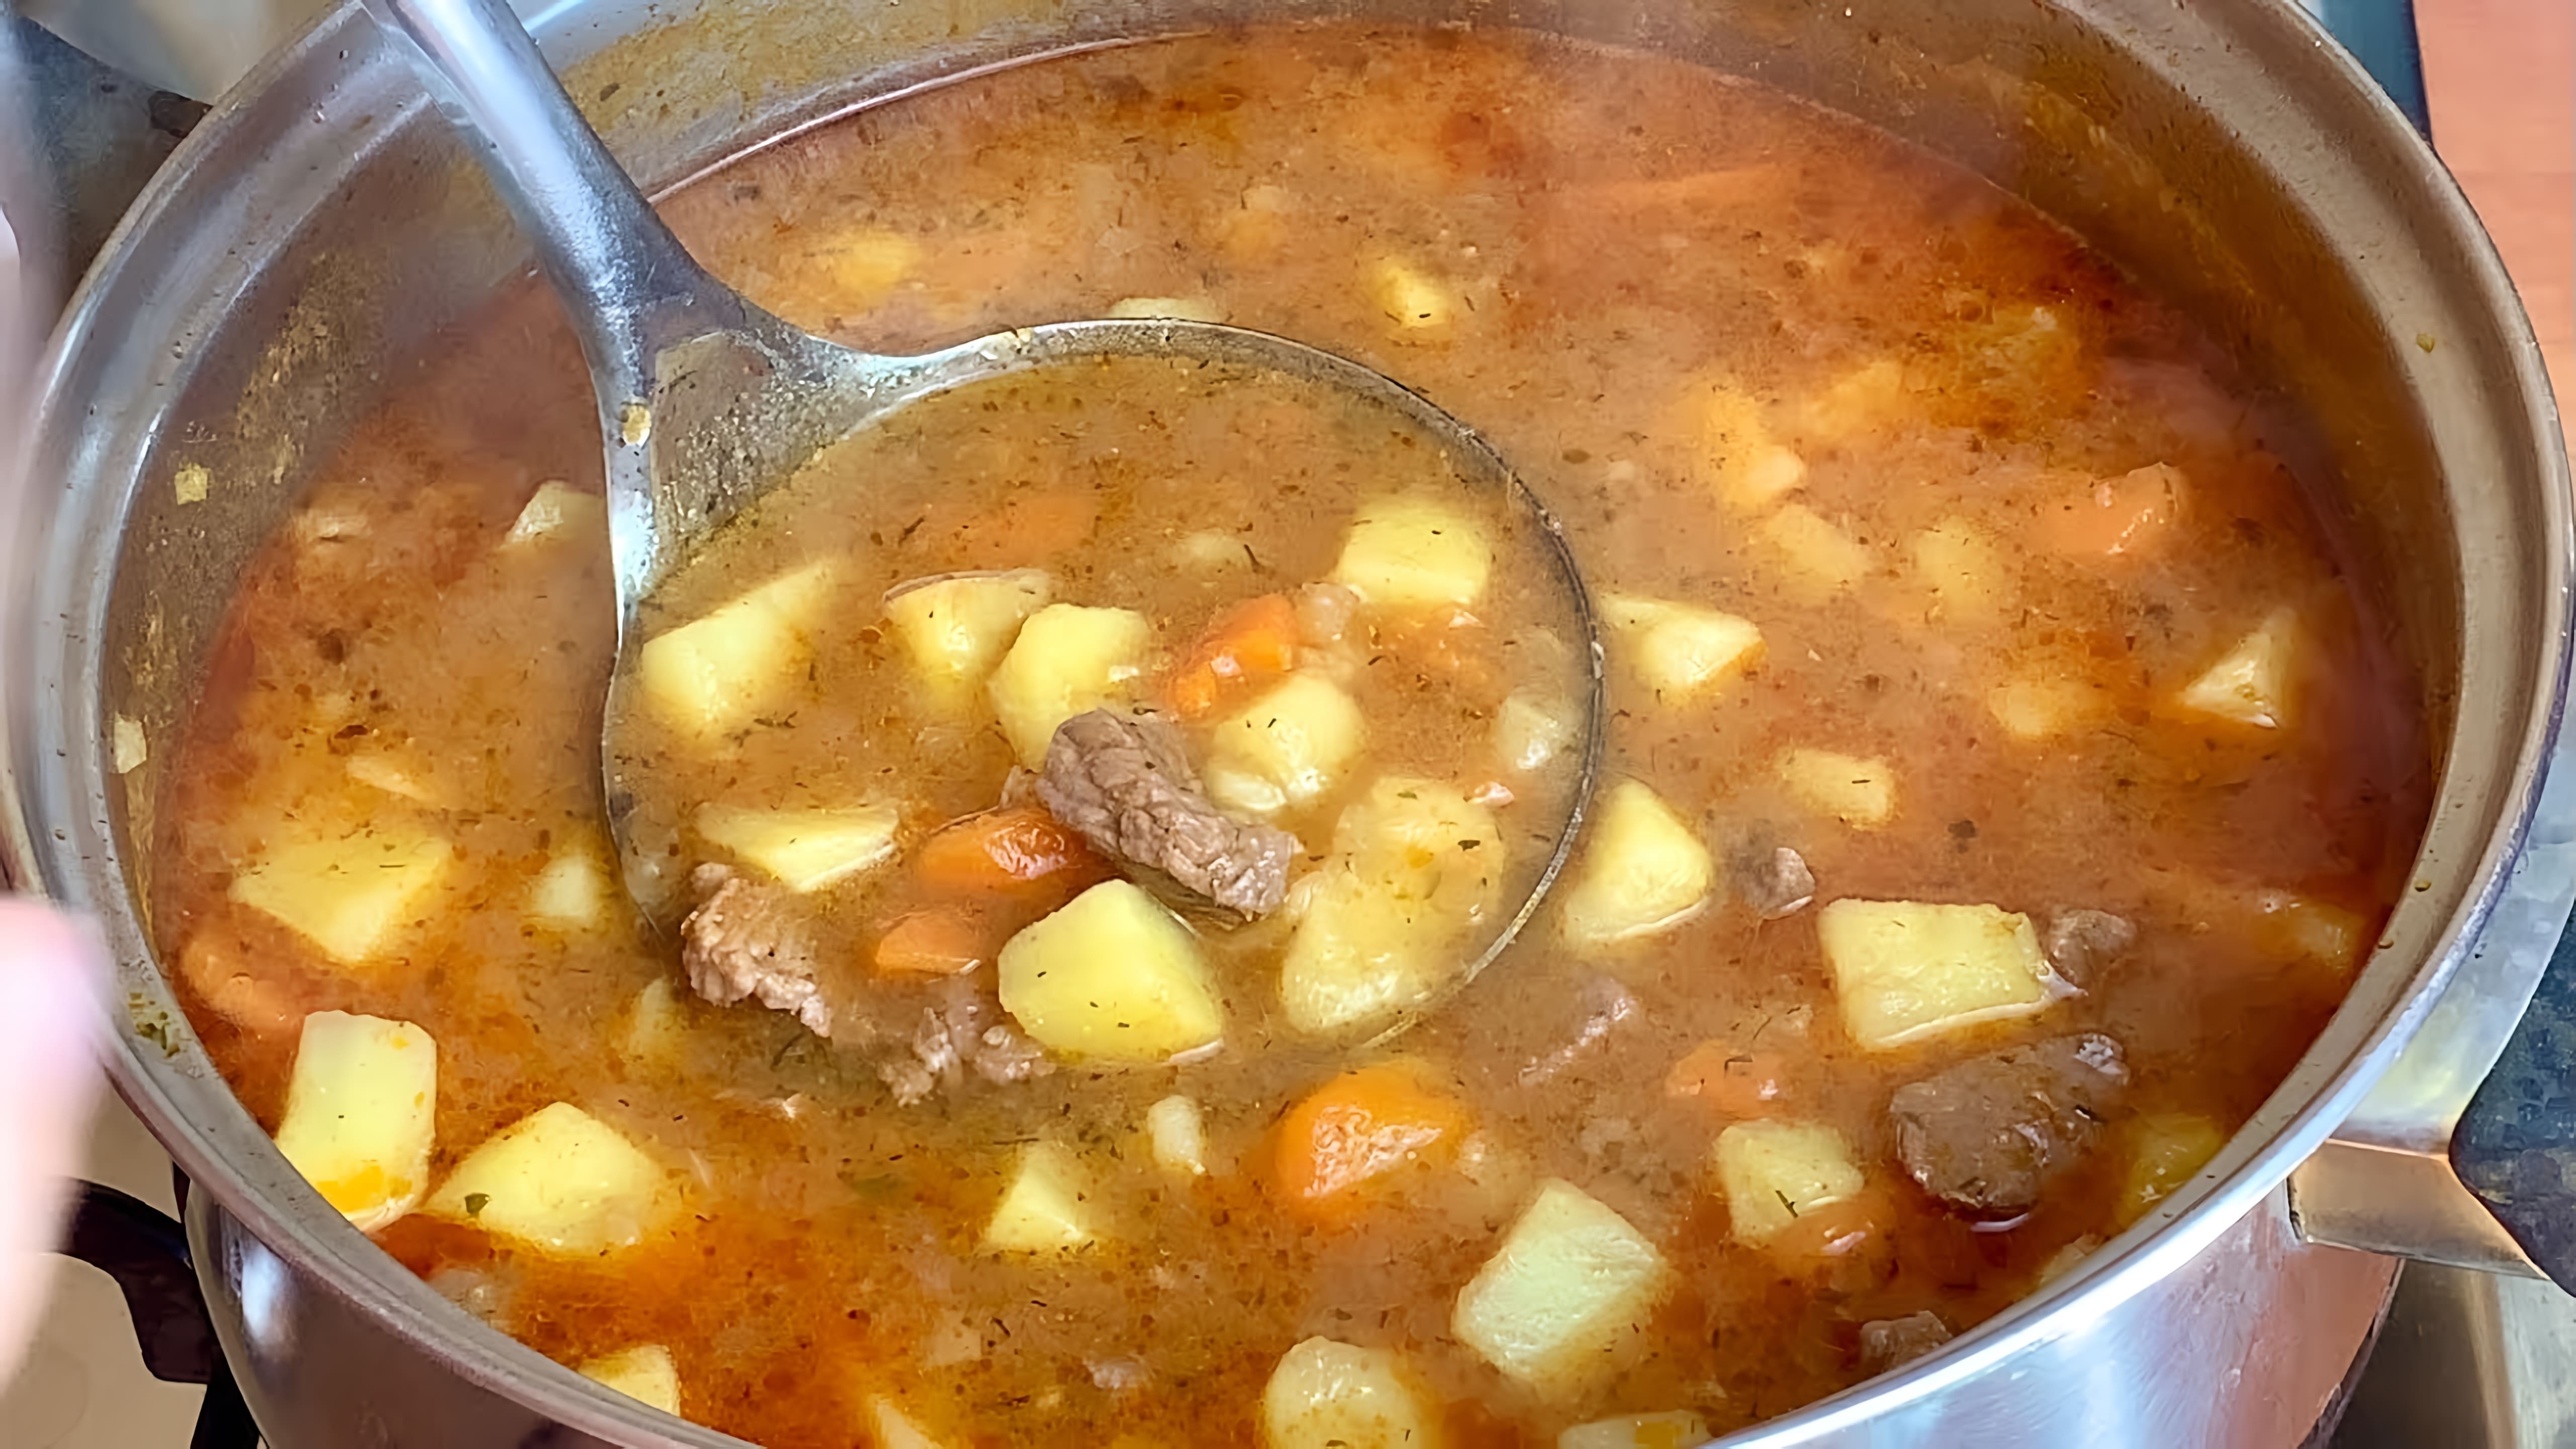 Рецепт простого и вкусного супа, который создатель любит готовить 3 раза в неделю